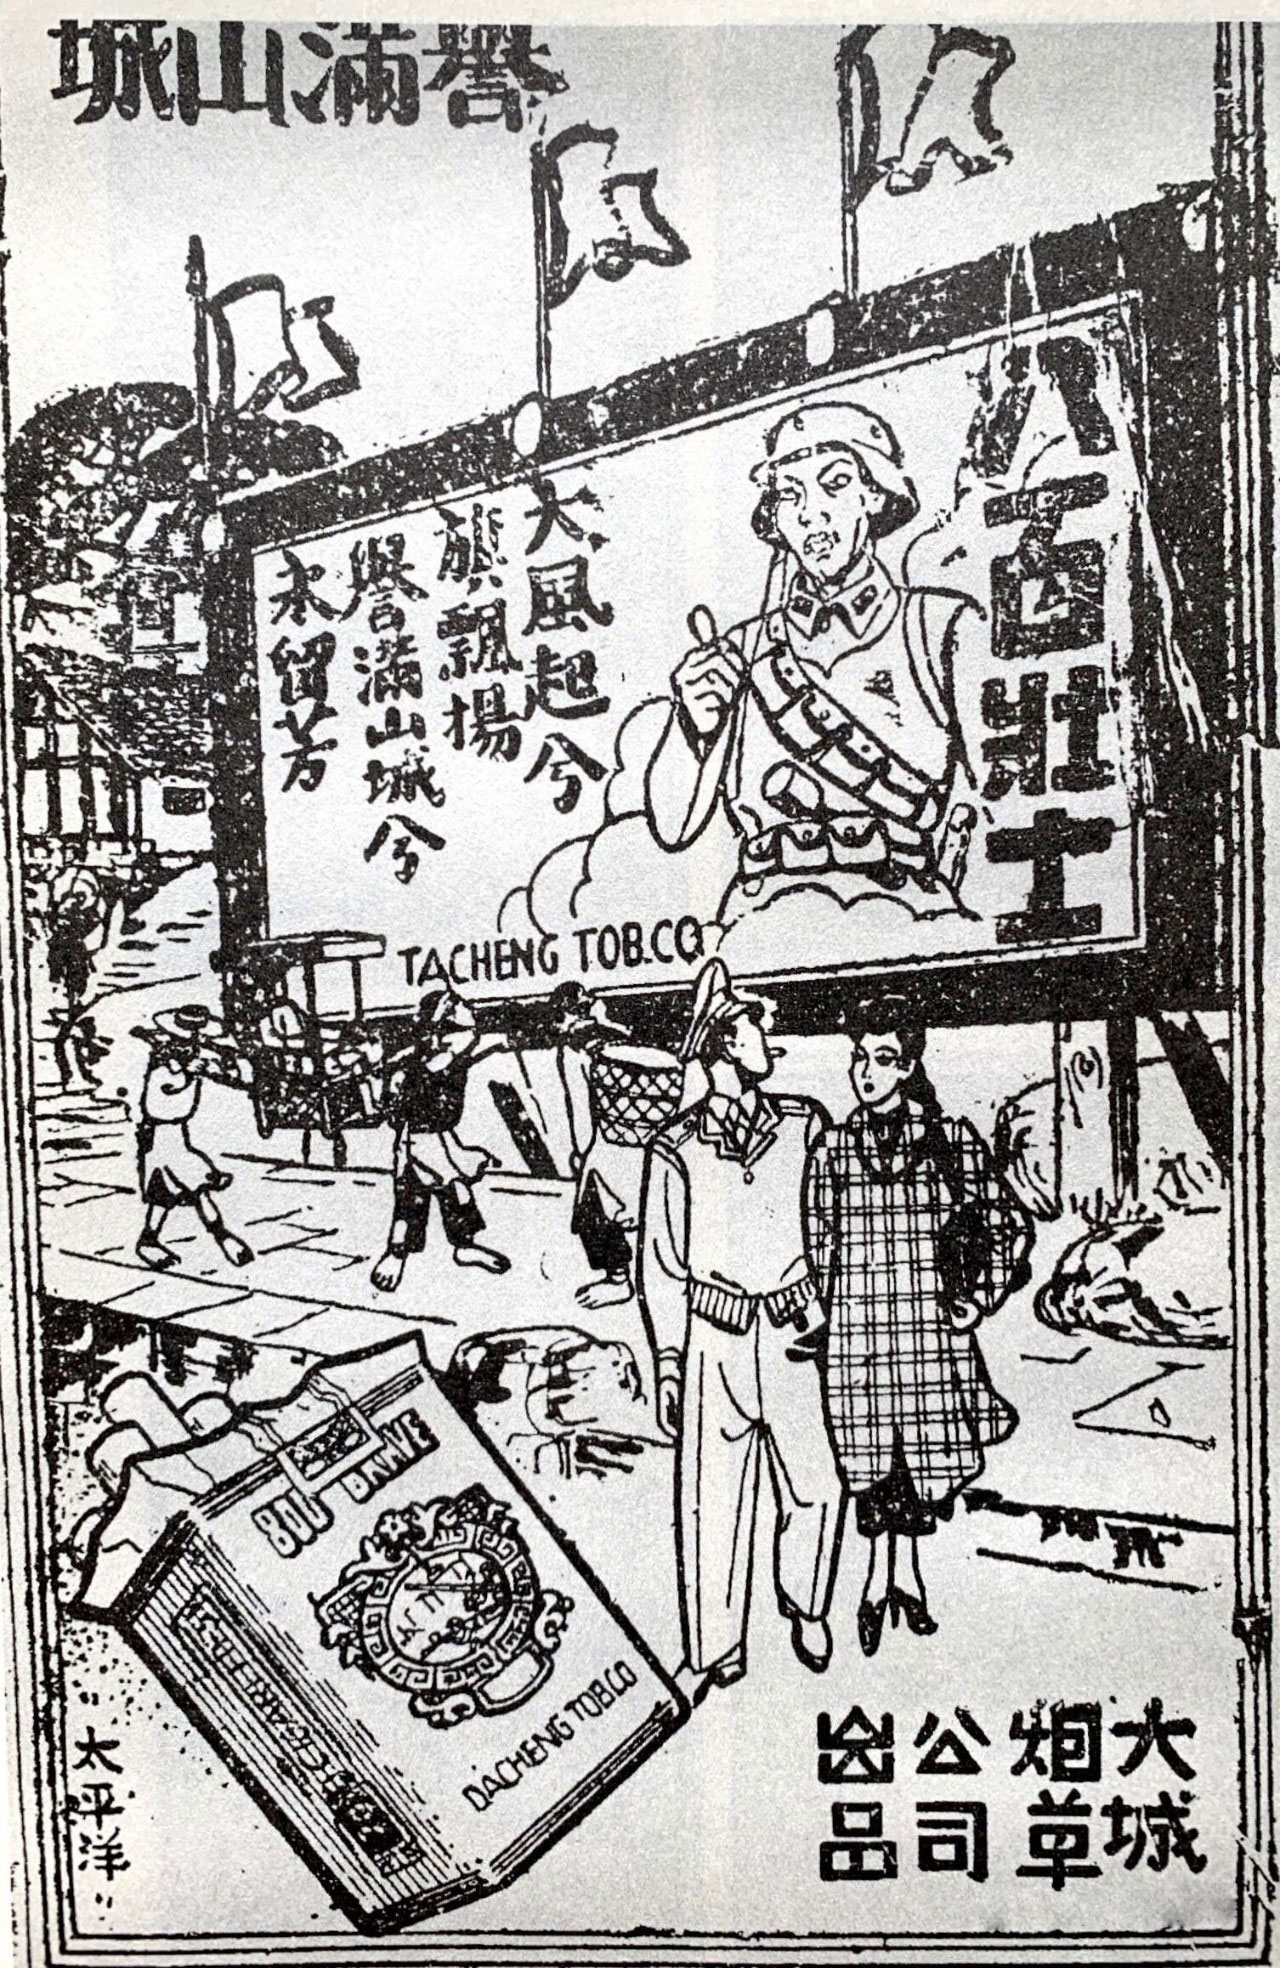 “陪都”重庆报纸上刊登的“八百壮士”香烟广告